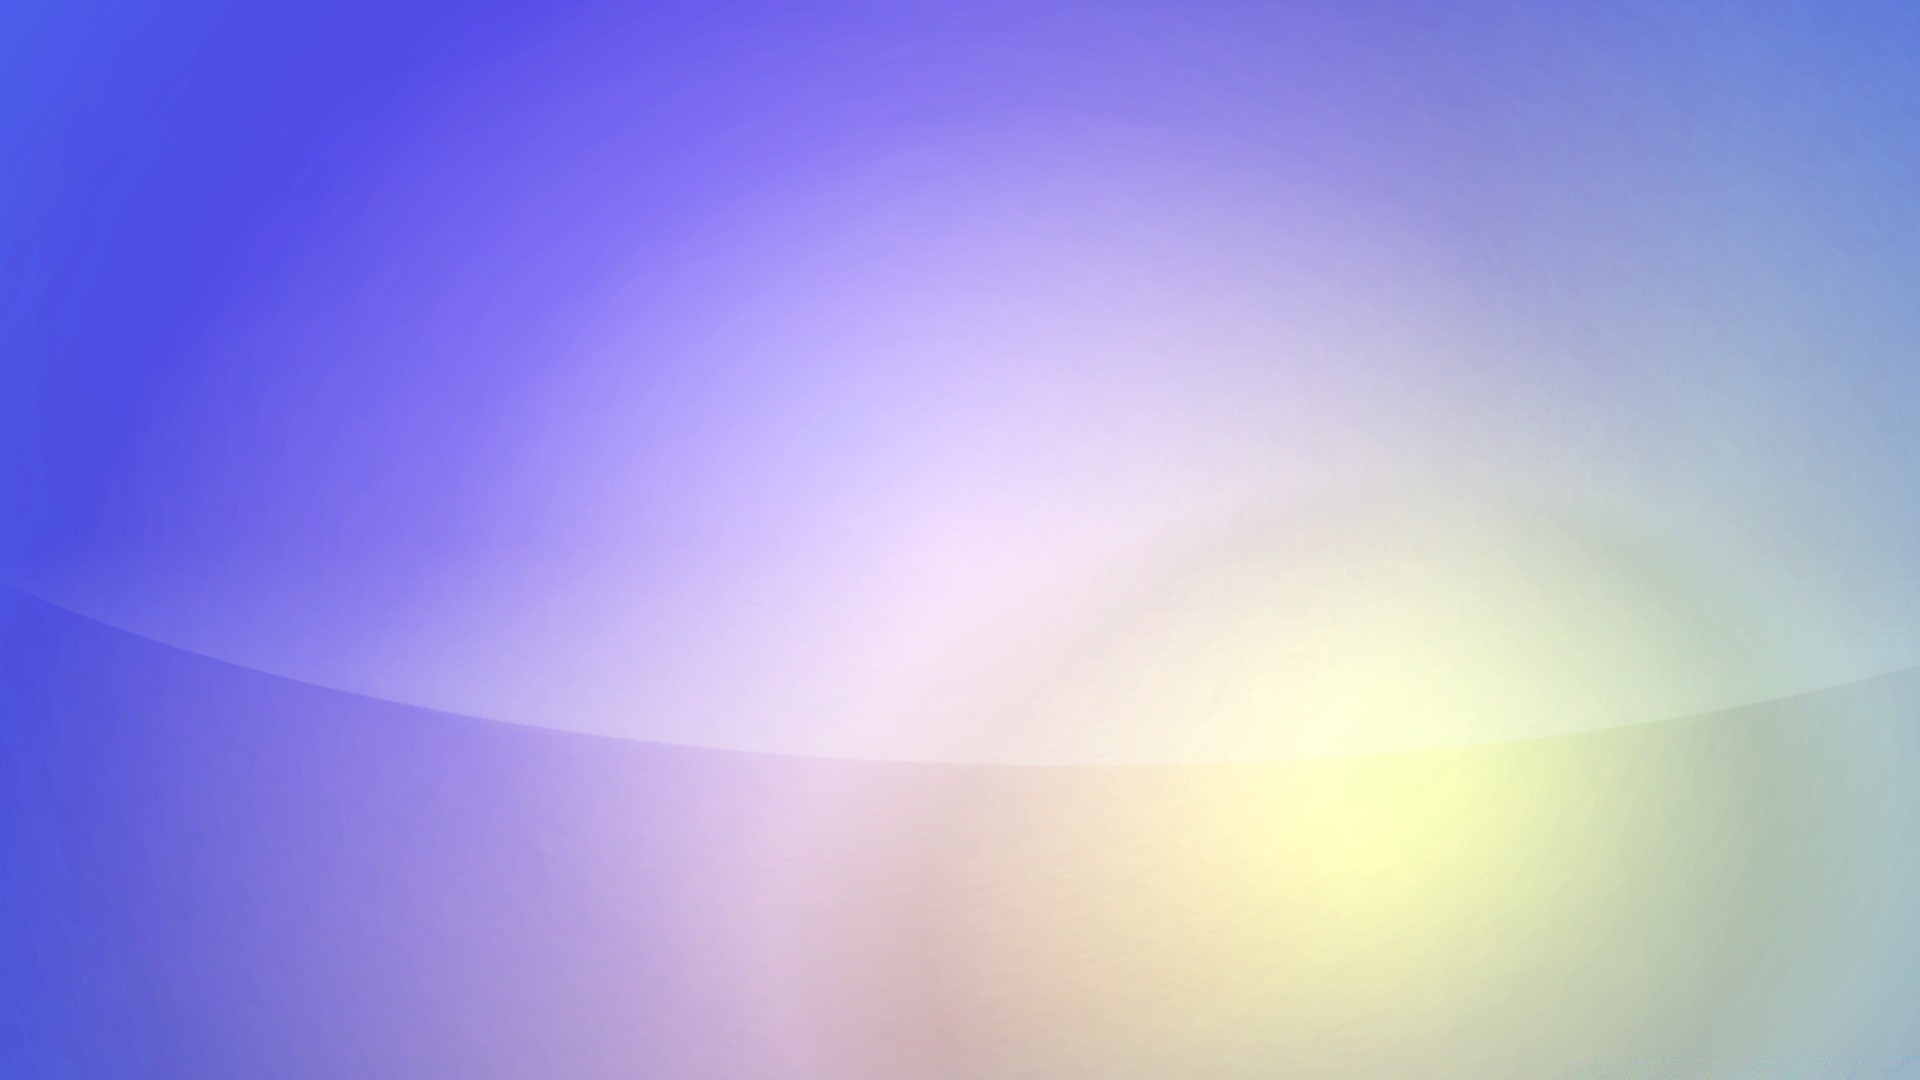 яркие краски аннотация свет искусство цвет солнце график обои яркий размытость рабочего стола градиент фон пространство иллюстрация пастель природа небо